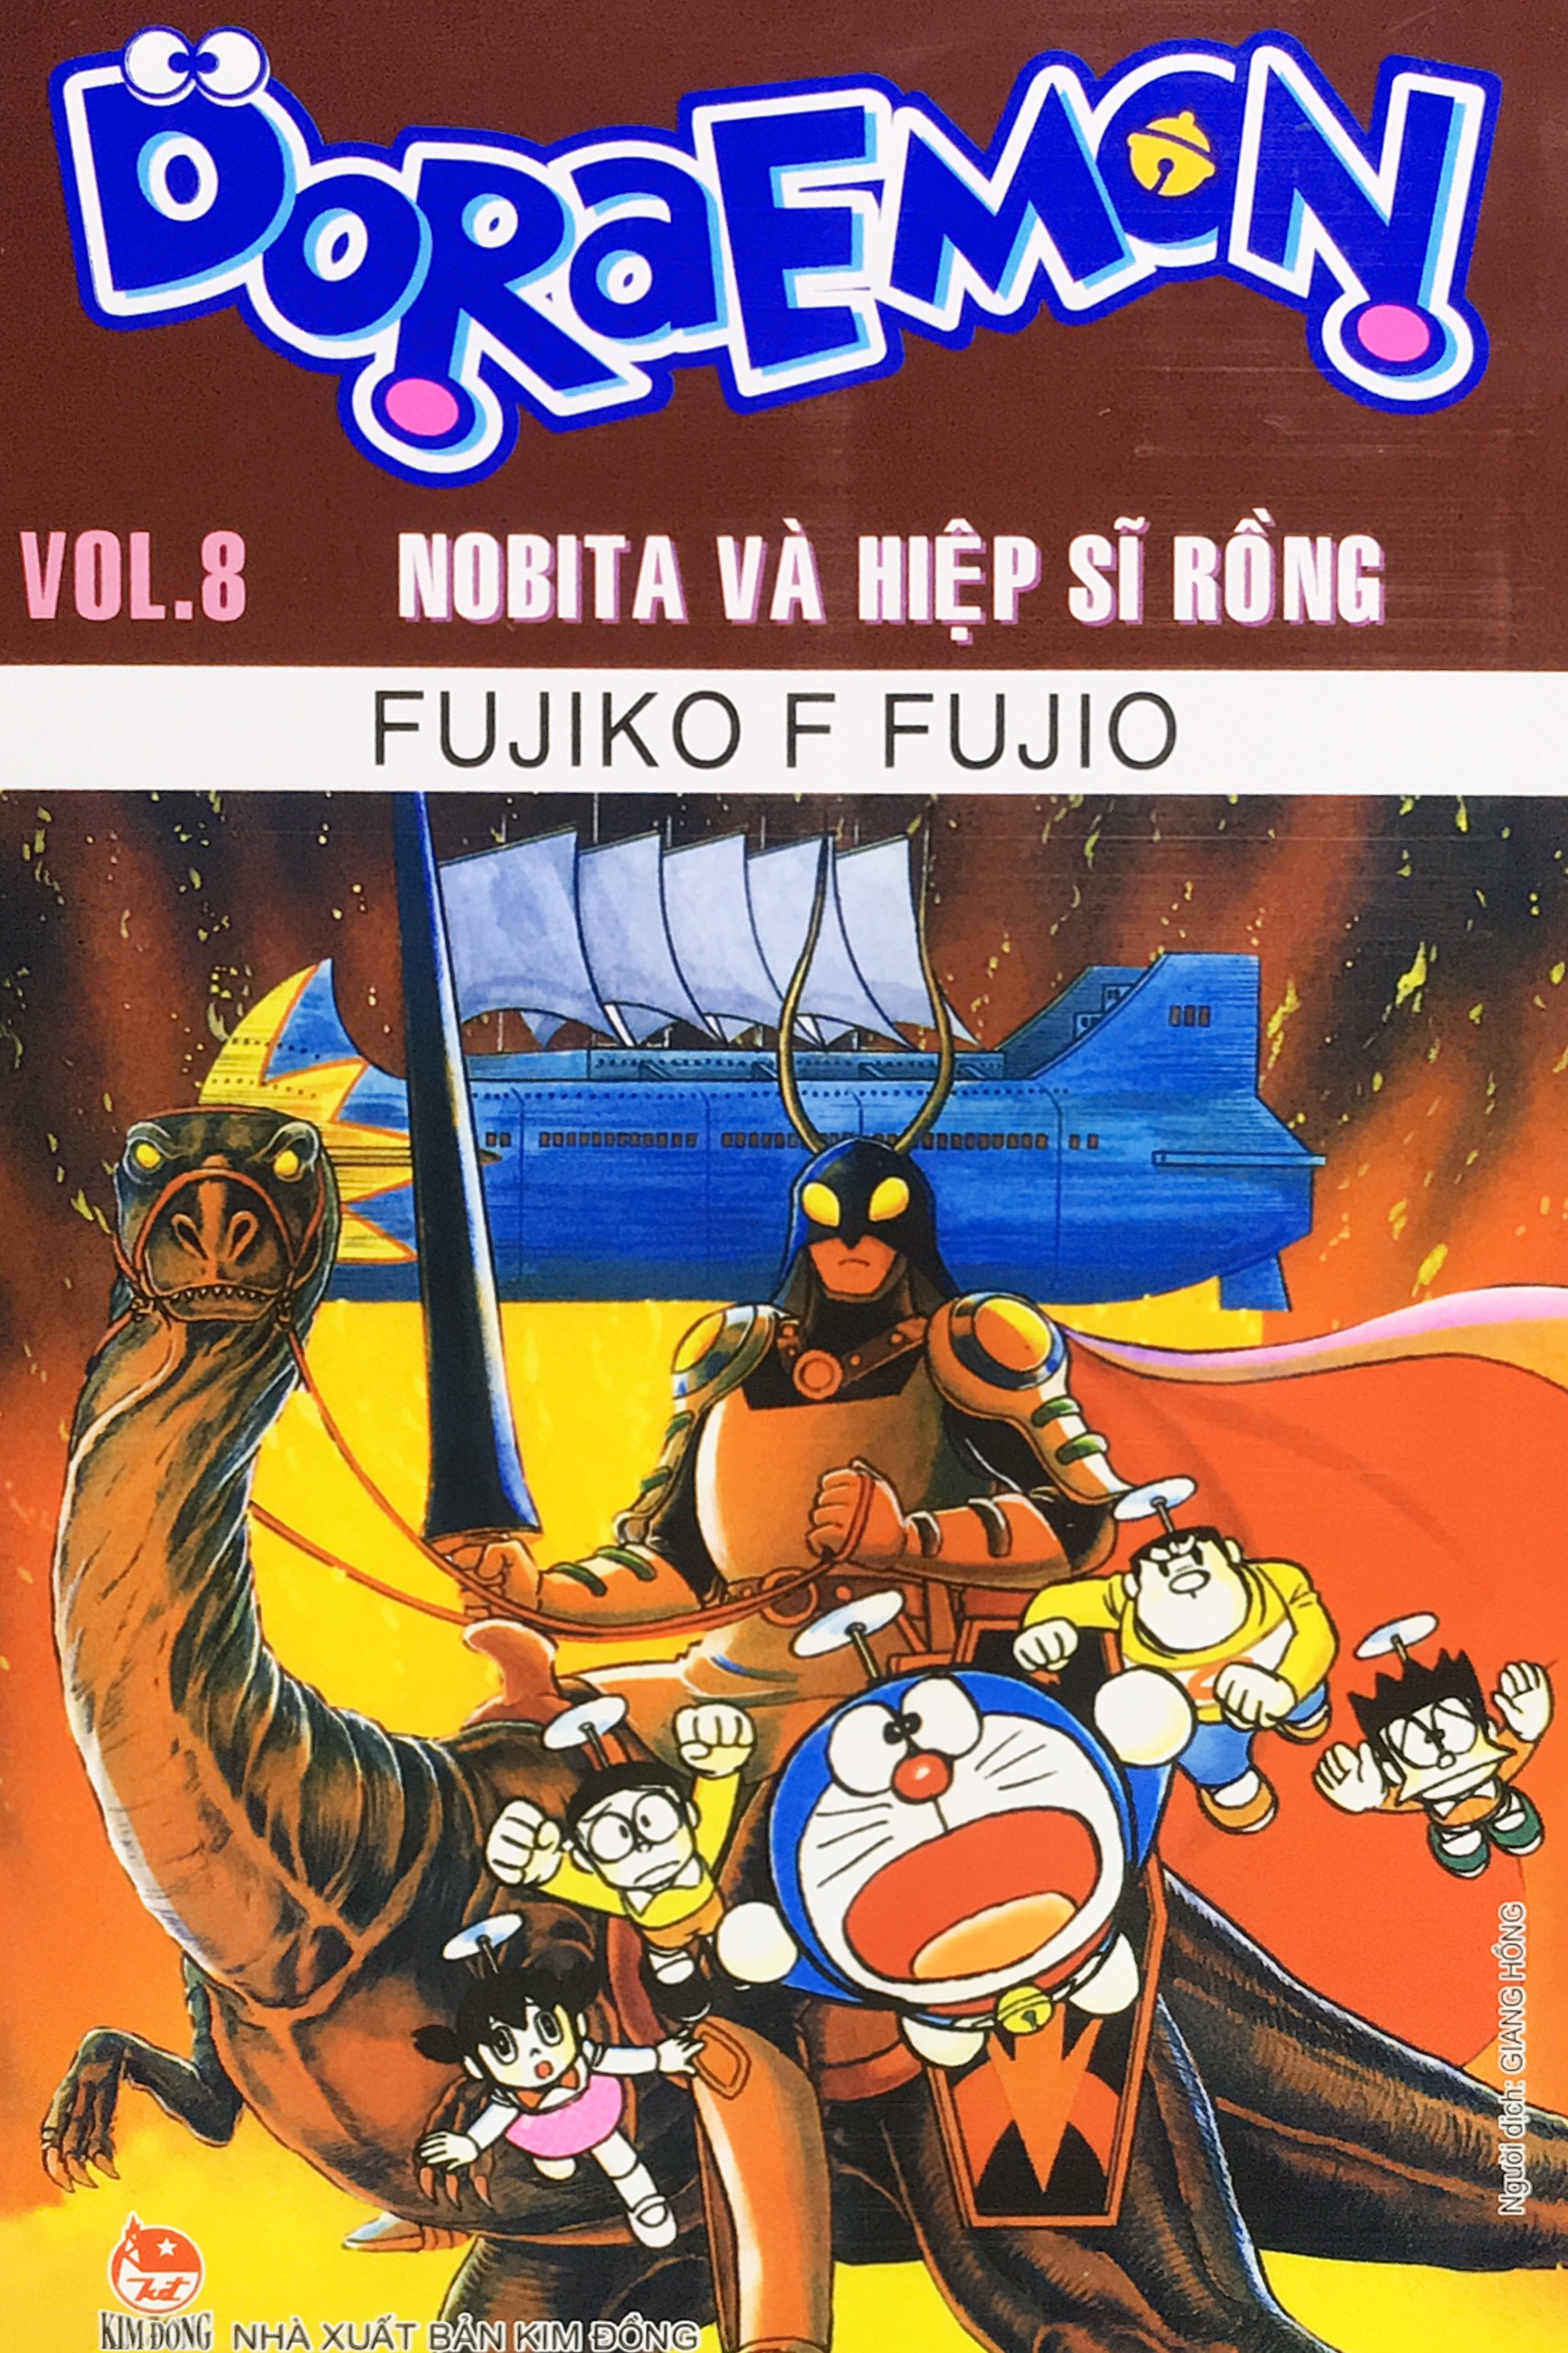 Truyện Tranh - Doraemon Vol.8 Nobita Và Hiệp Sĩ Rồng - Truyện Tranh, Manga,  Comic | Sáchviệt.Vn